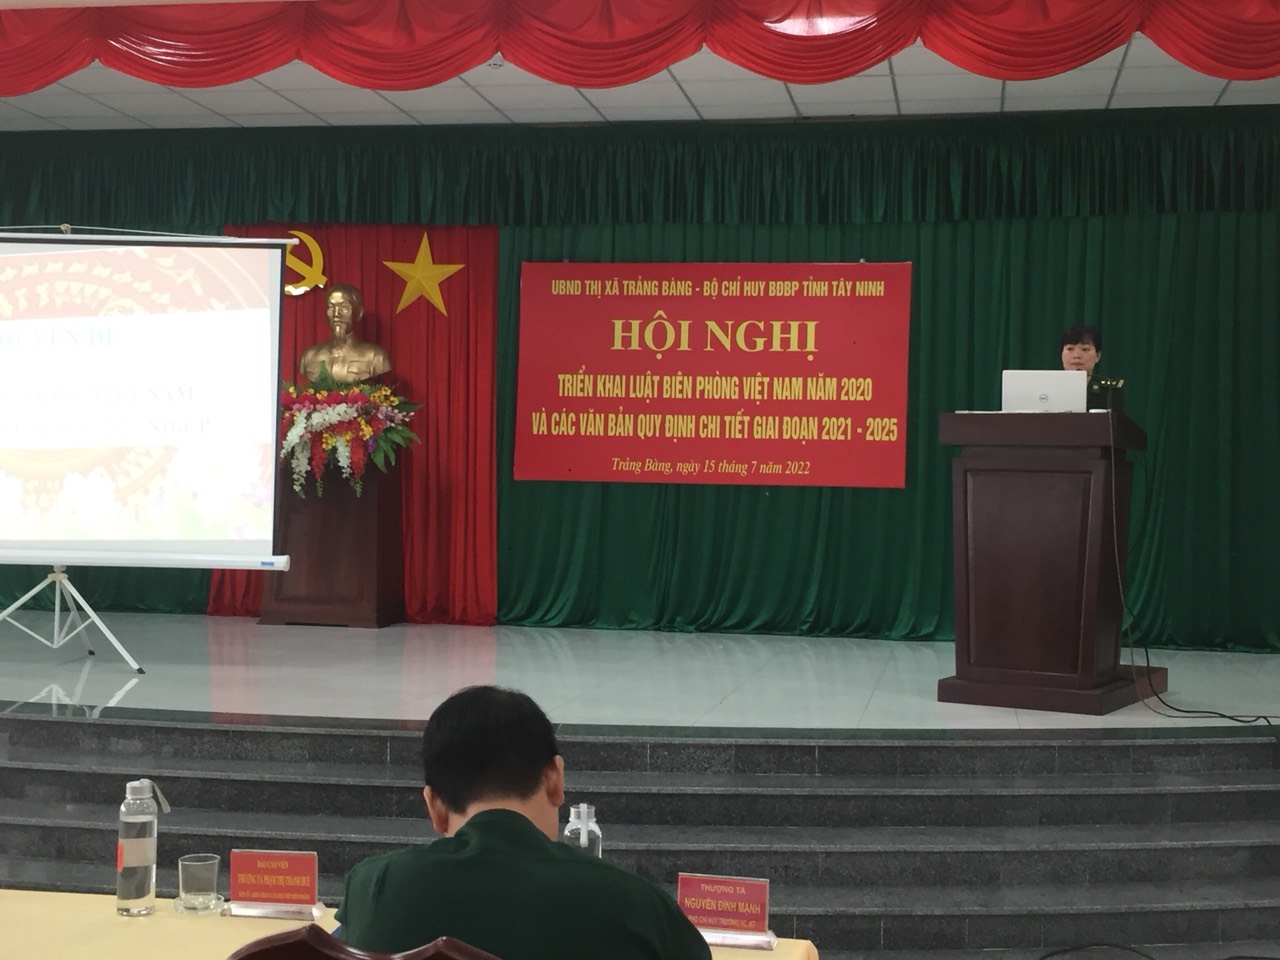 Trảng Bàng tổ chức Hội nghị triển khai Luật Biên phòng Việt Nam năm 2020 và các văn bản quy định chi tiết giai đoạn 2021 - 2025